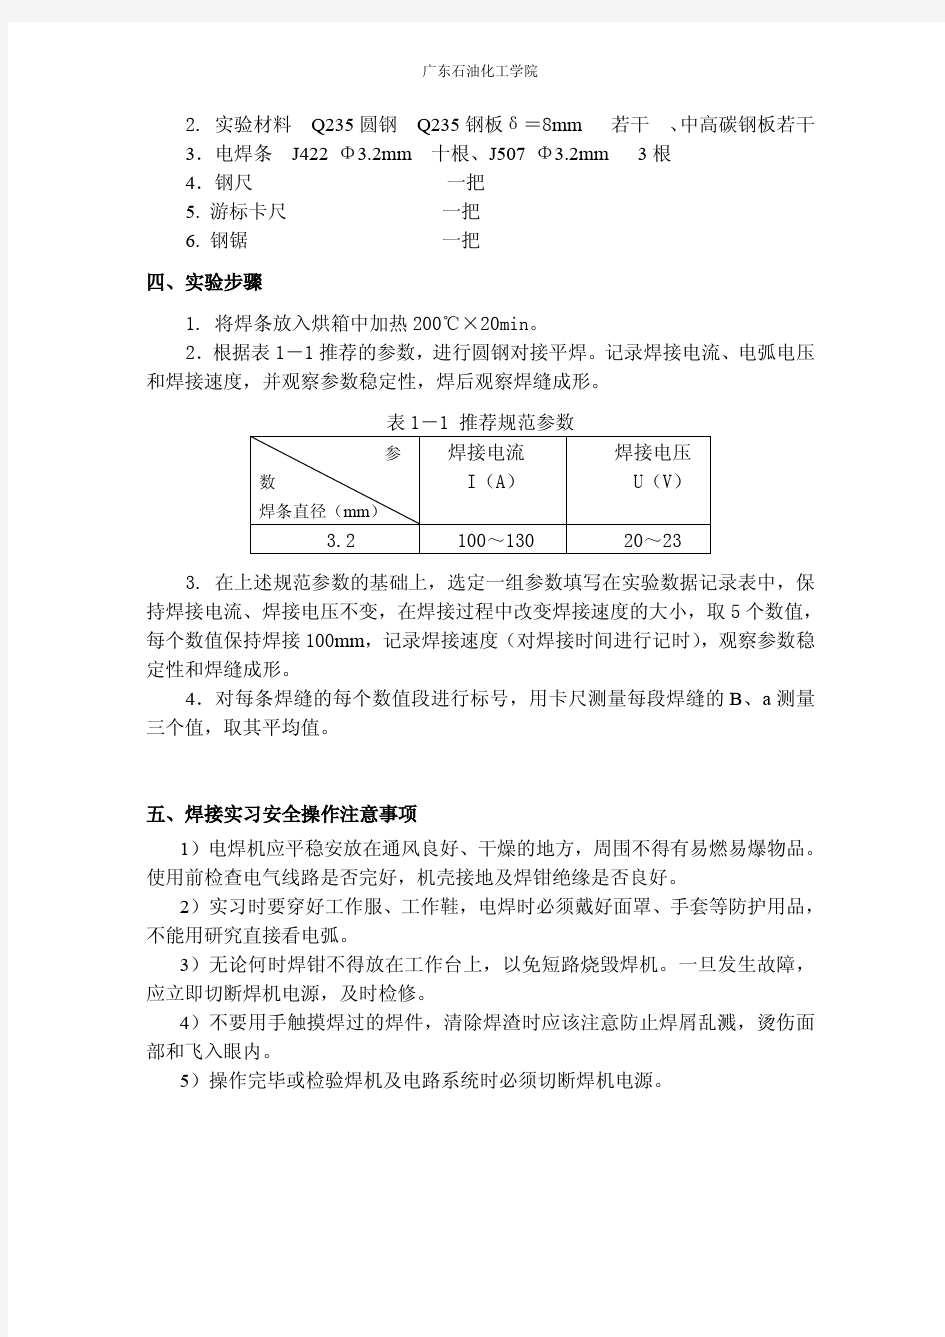 2014金属焊接实验指导书(广东石油化工学院)